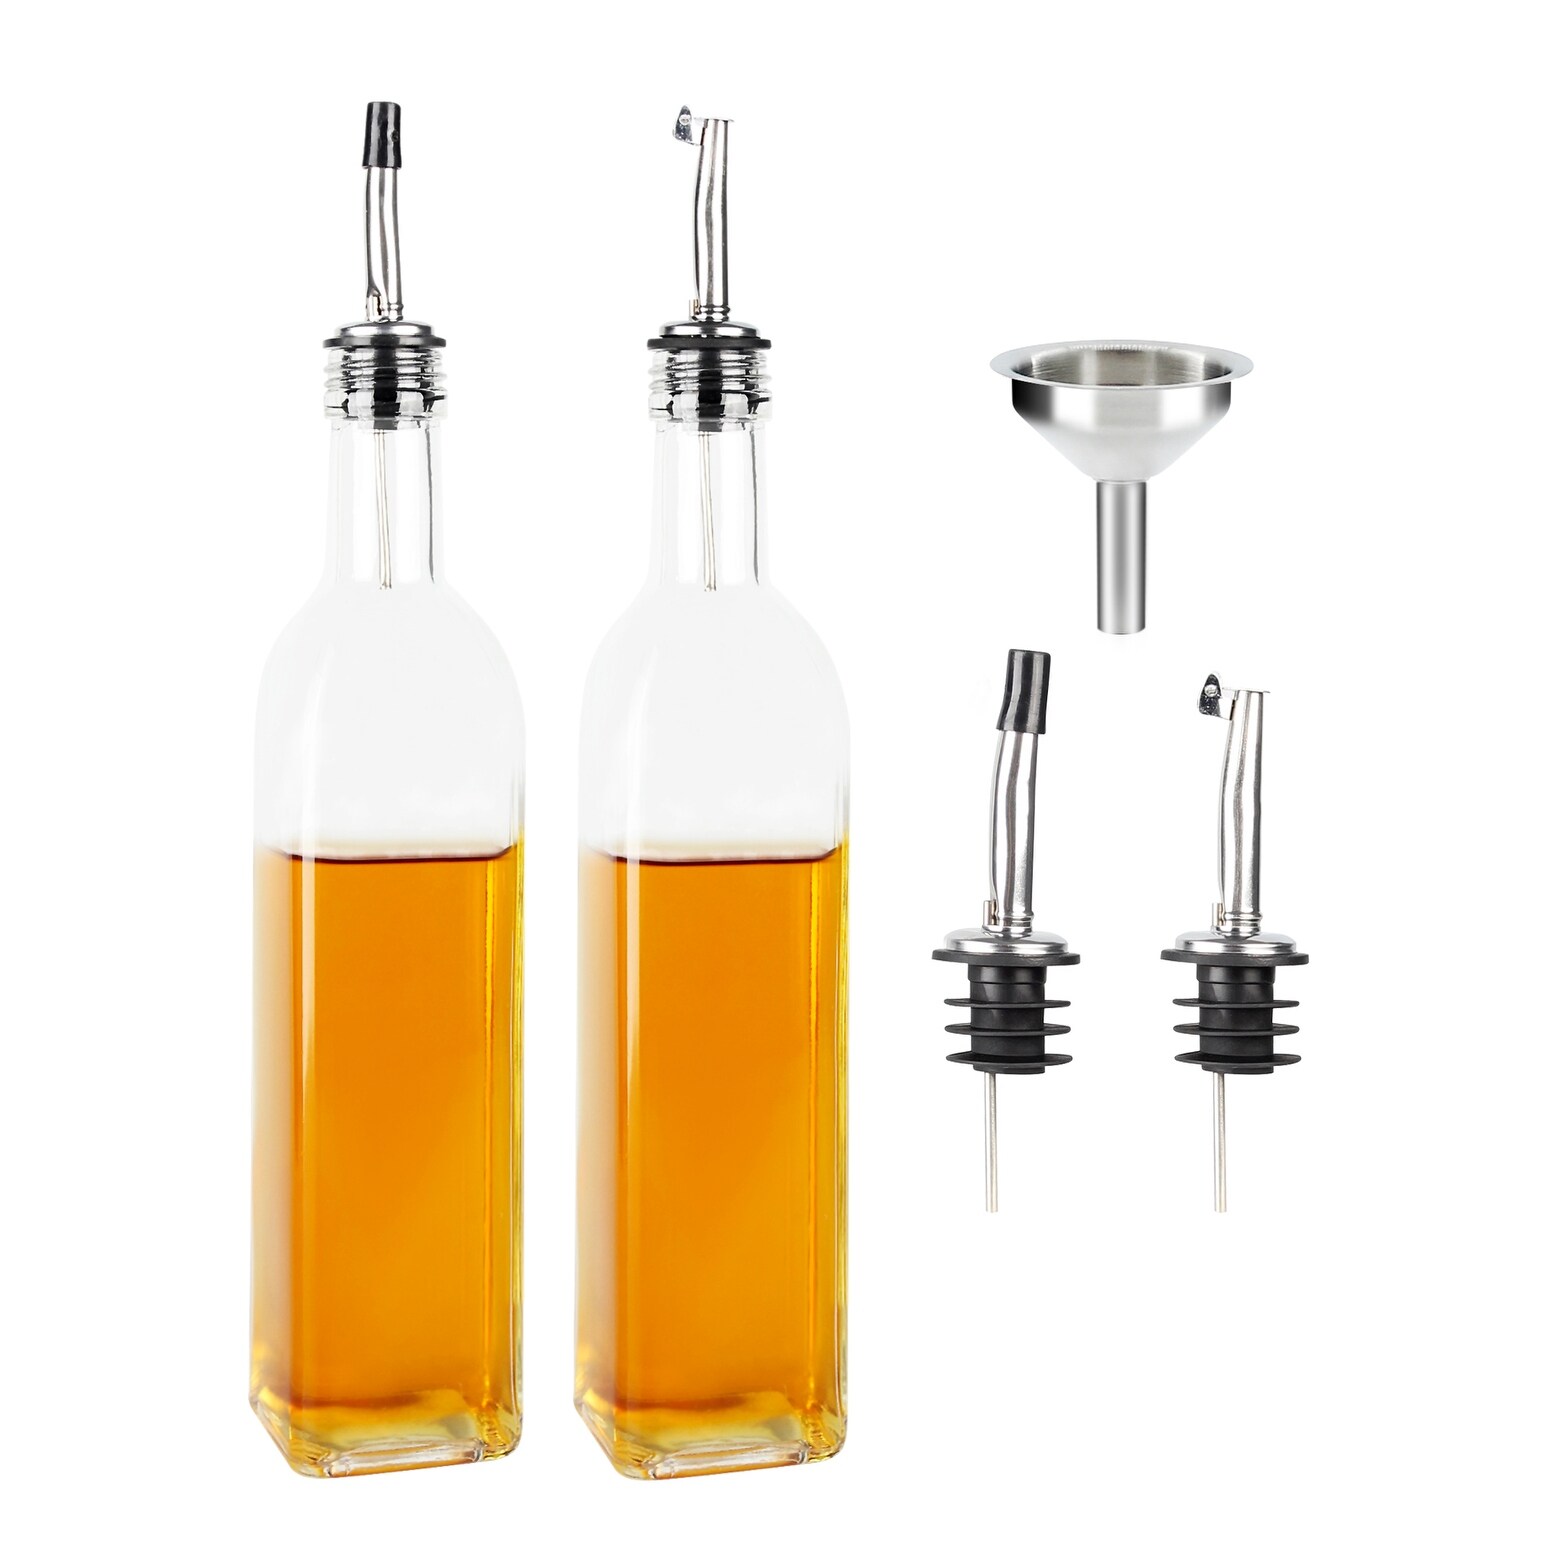 Oil and Vinegar Bottle Set + Reviews